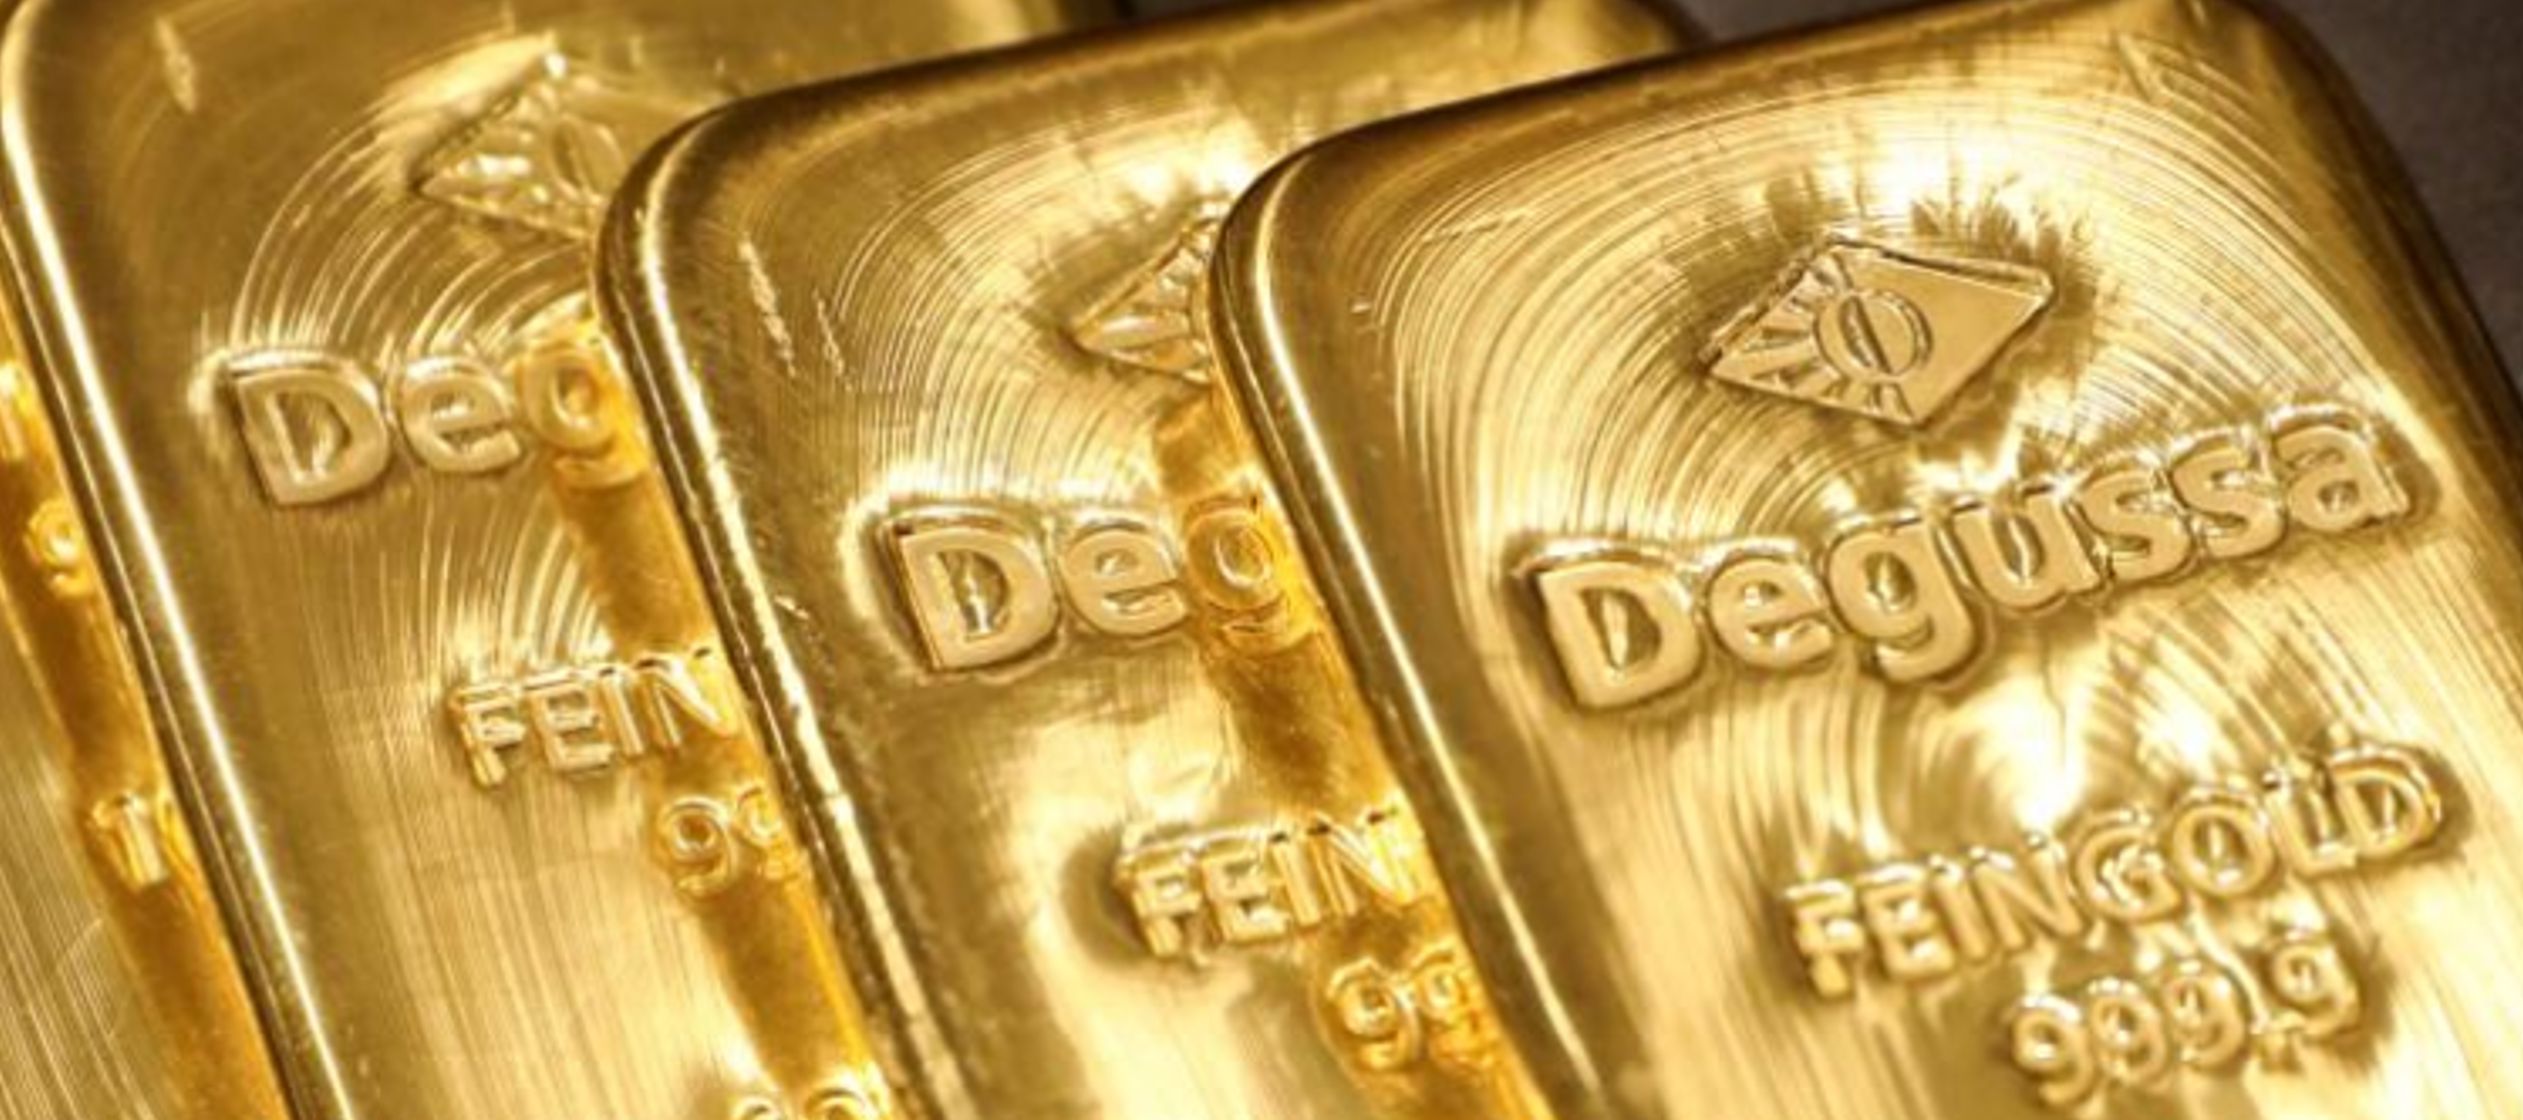 Los precios del oro subieron el lunes a máximos en cinco meses, a 1.250,55 dólares,...